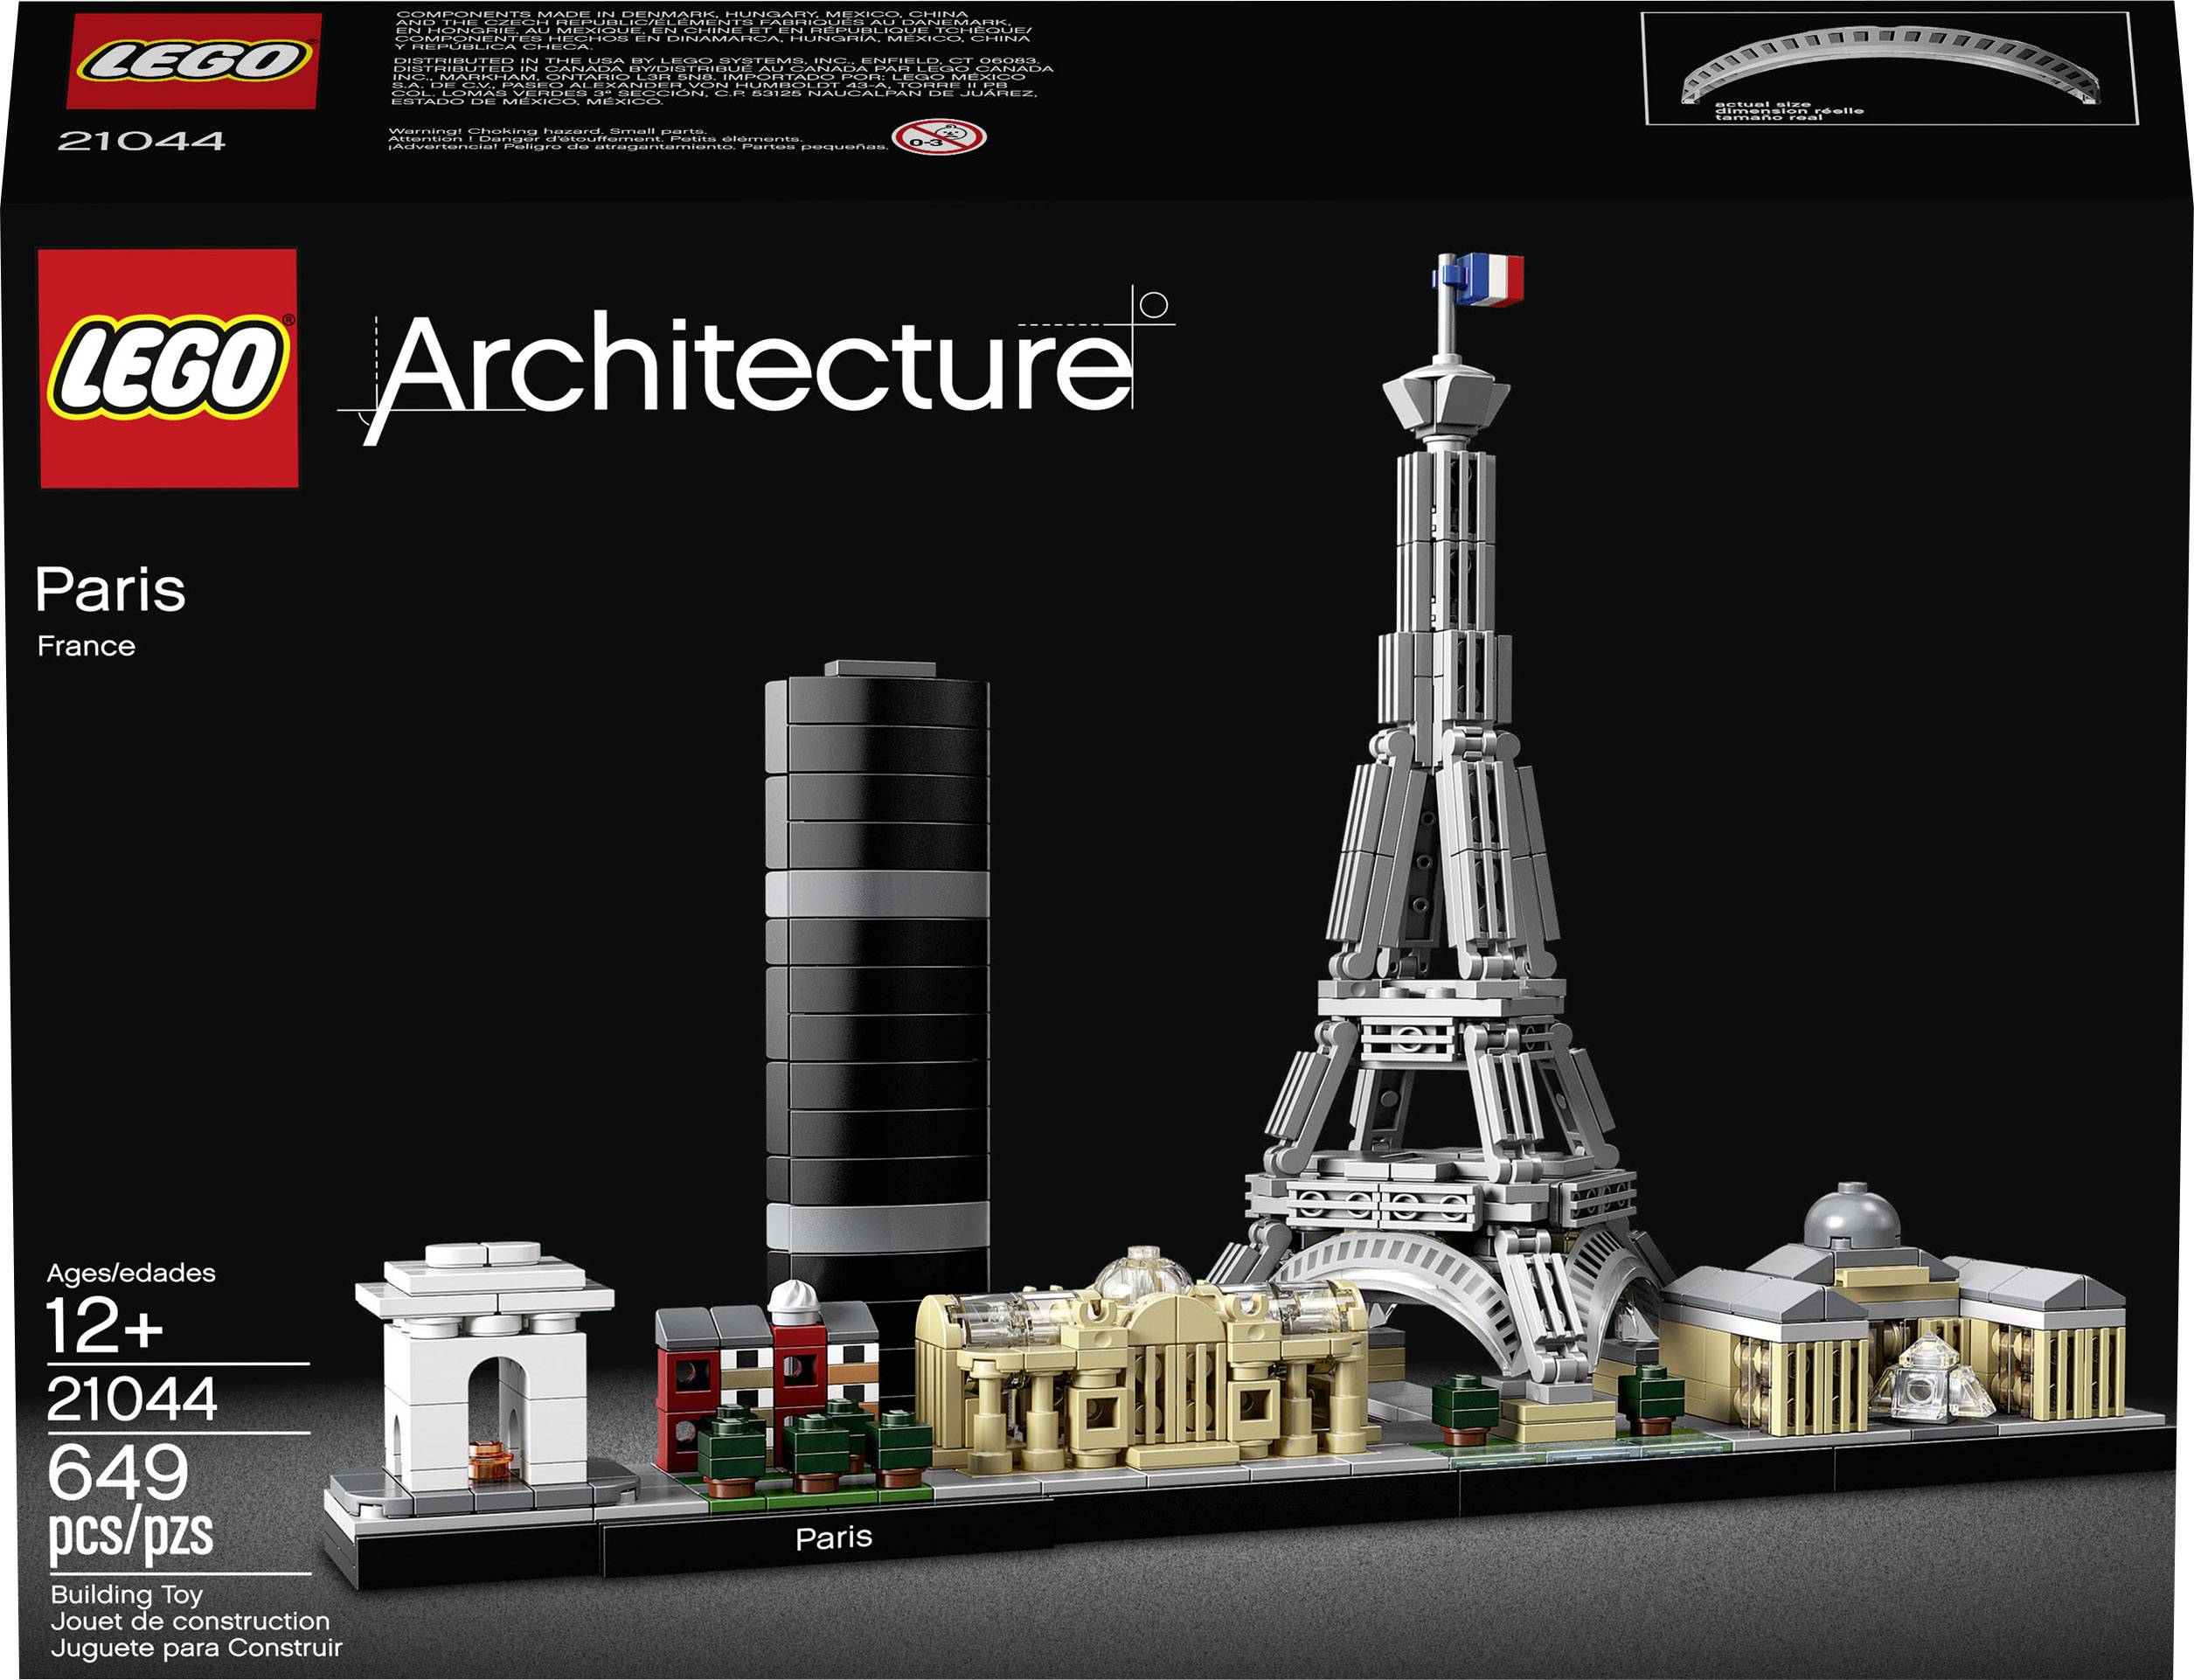 Regelmæssigt efter skole lancering 21044 LEGO® ARCHITECTURE Paris | Conrad.com